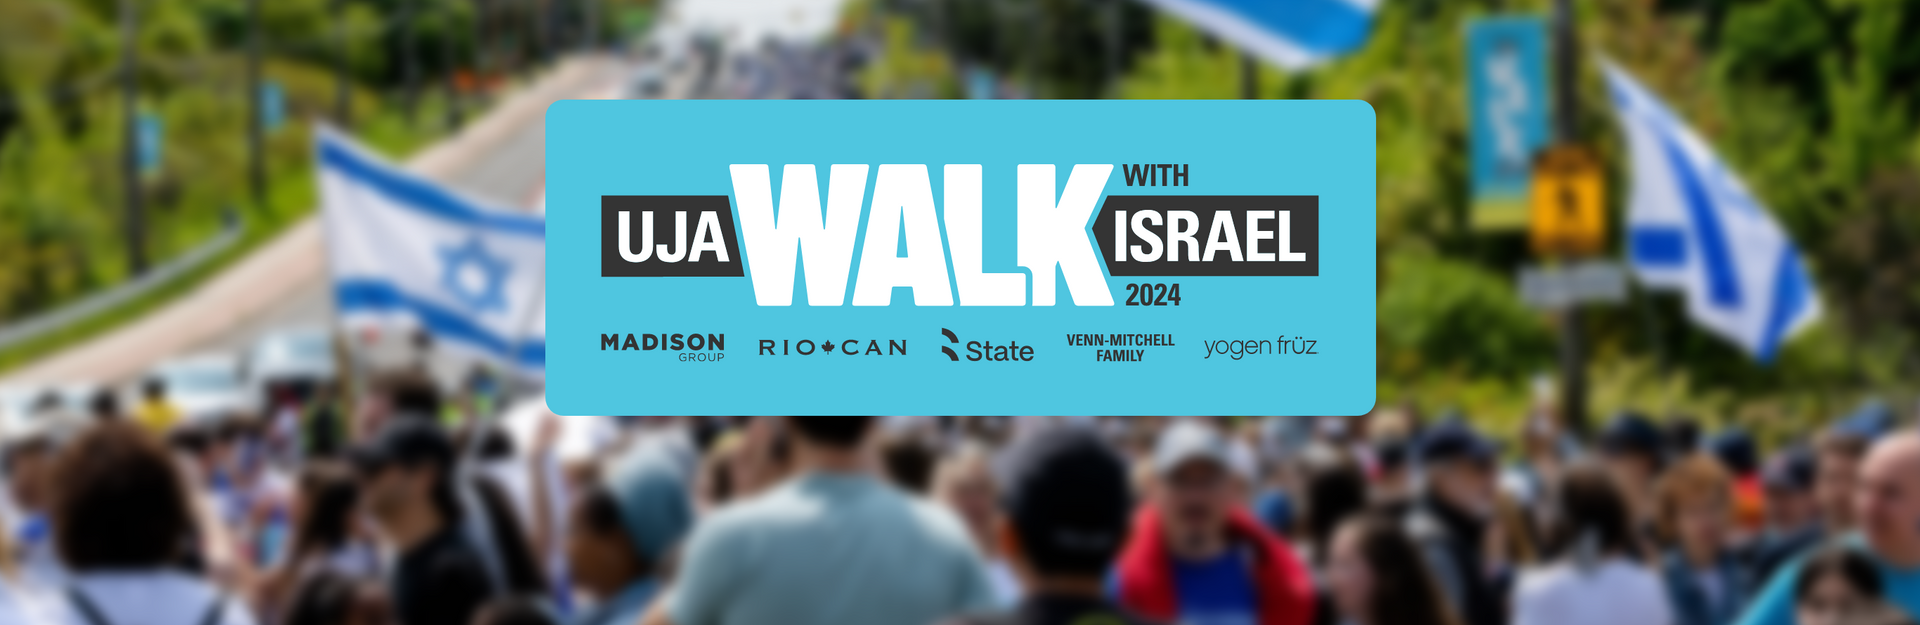 UJA Walk With Israel 2024